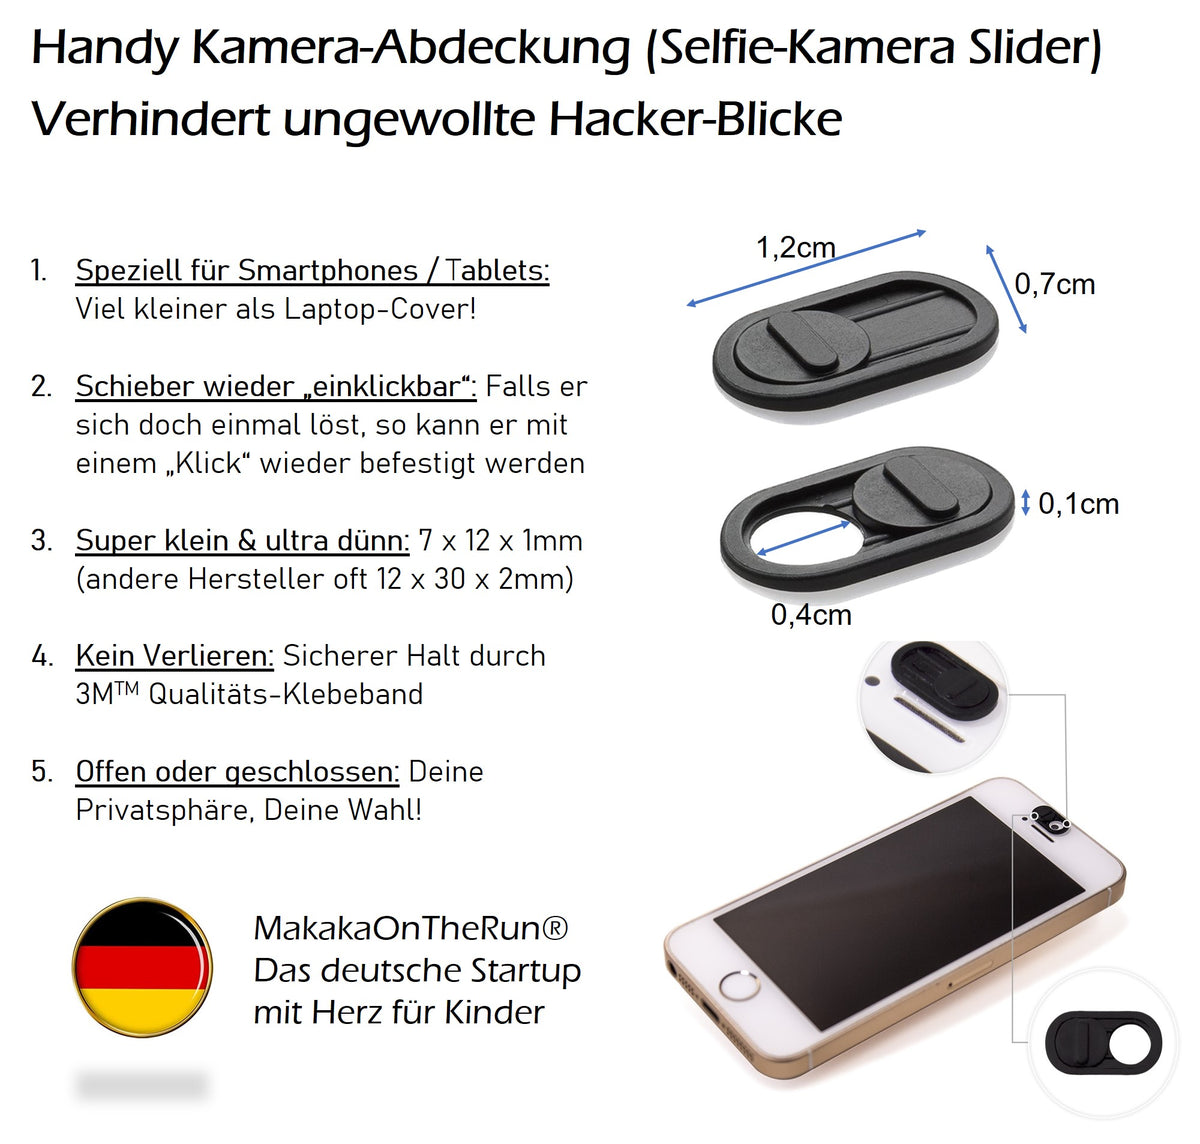 Kamera-Abdeckung für Handy, Tablet, Laptop, Computer